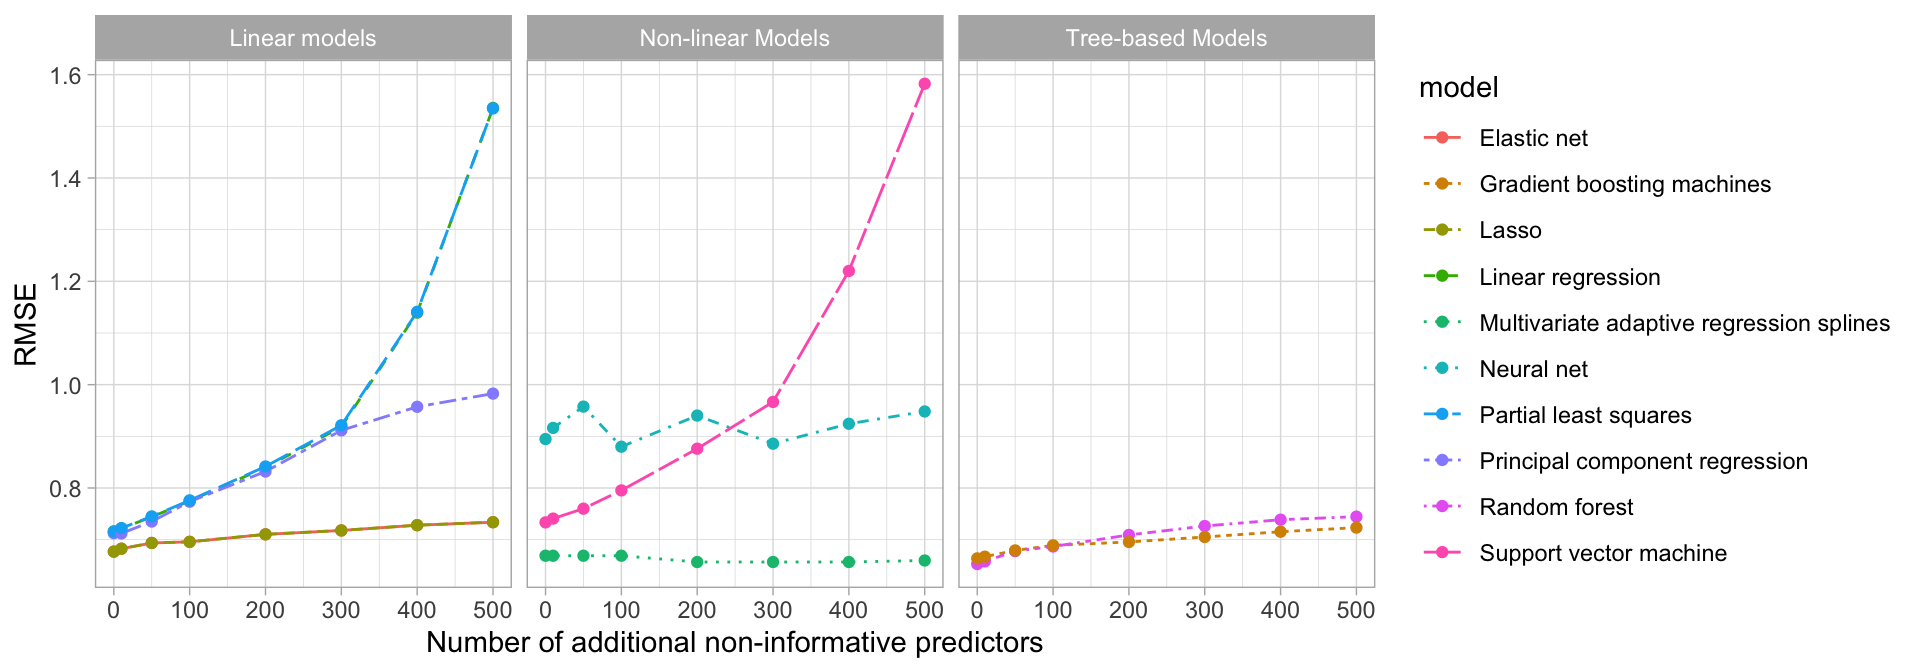 Test set RMSE profiles when non-informative predictors are added.